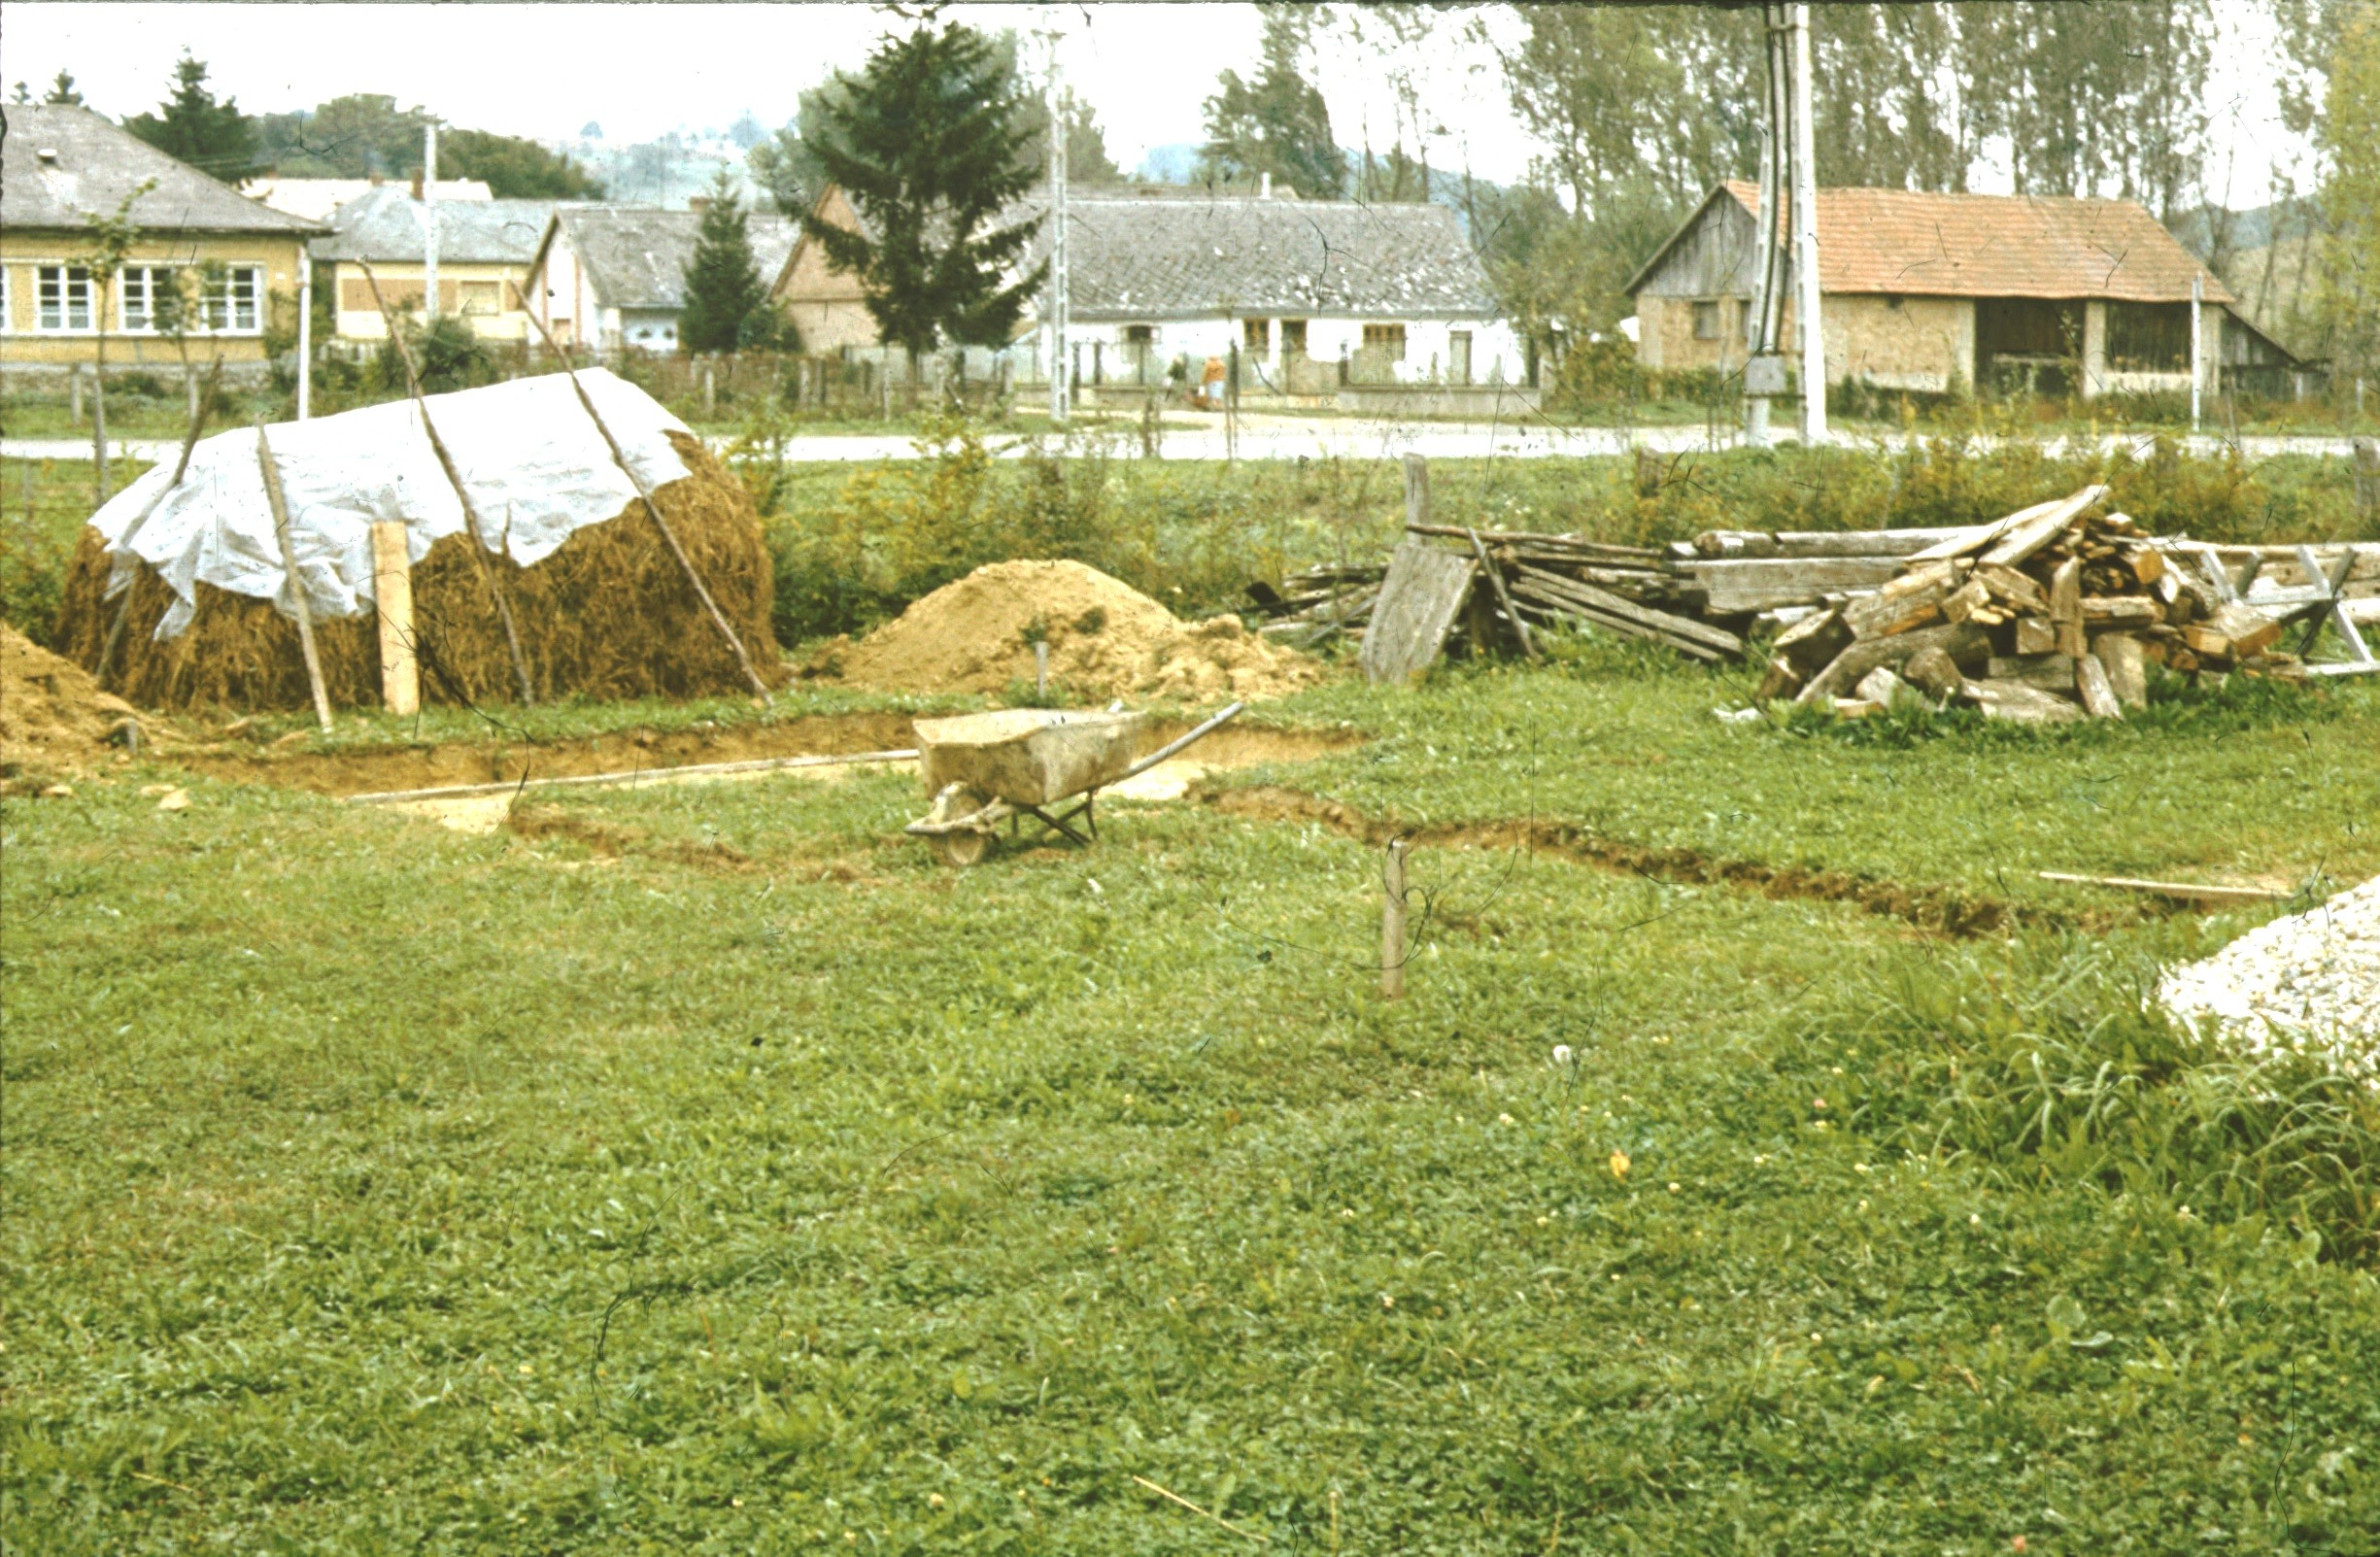 A görgetegi pajta-istálló alapozásának helye DK-i nézet (Rippl-Rónai Múzeum RR-F)